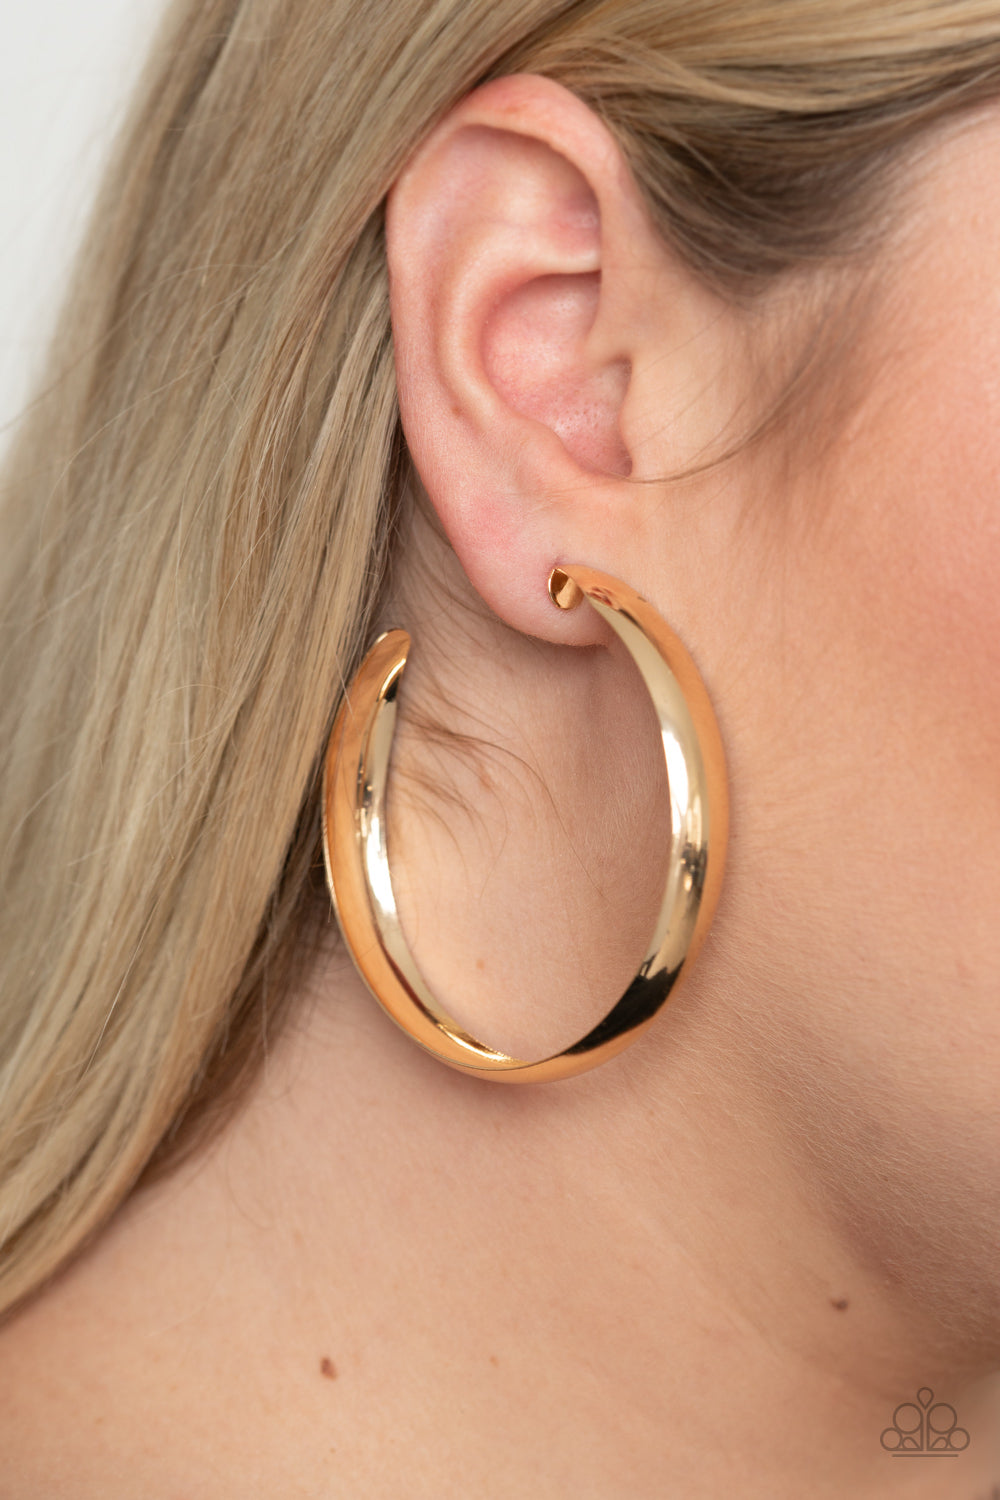 BEVEL In It - Gold Earrings - Hoop